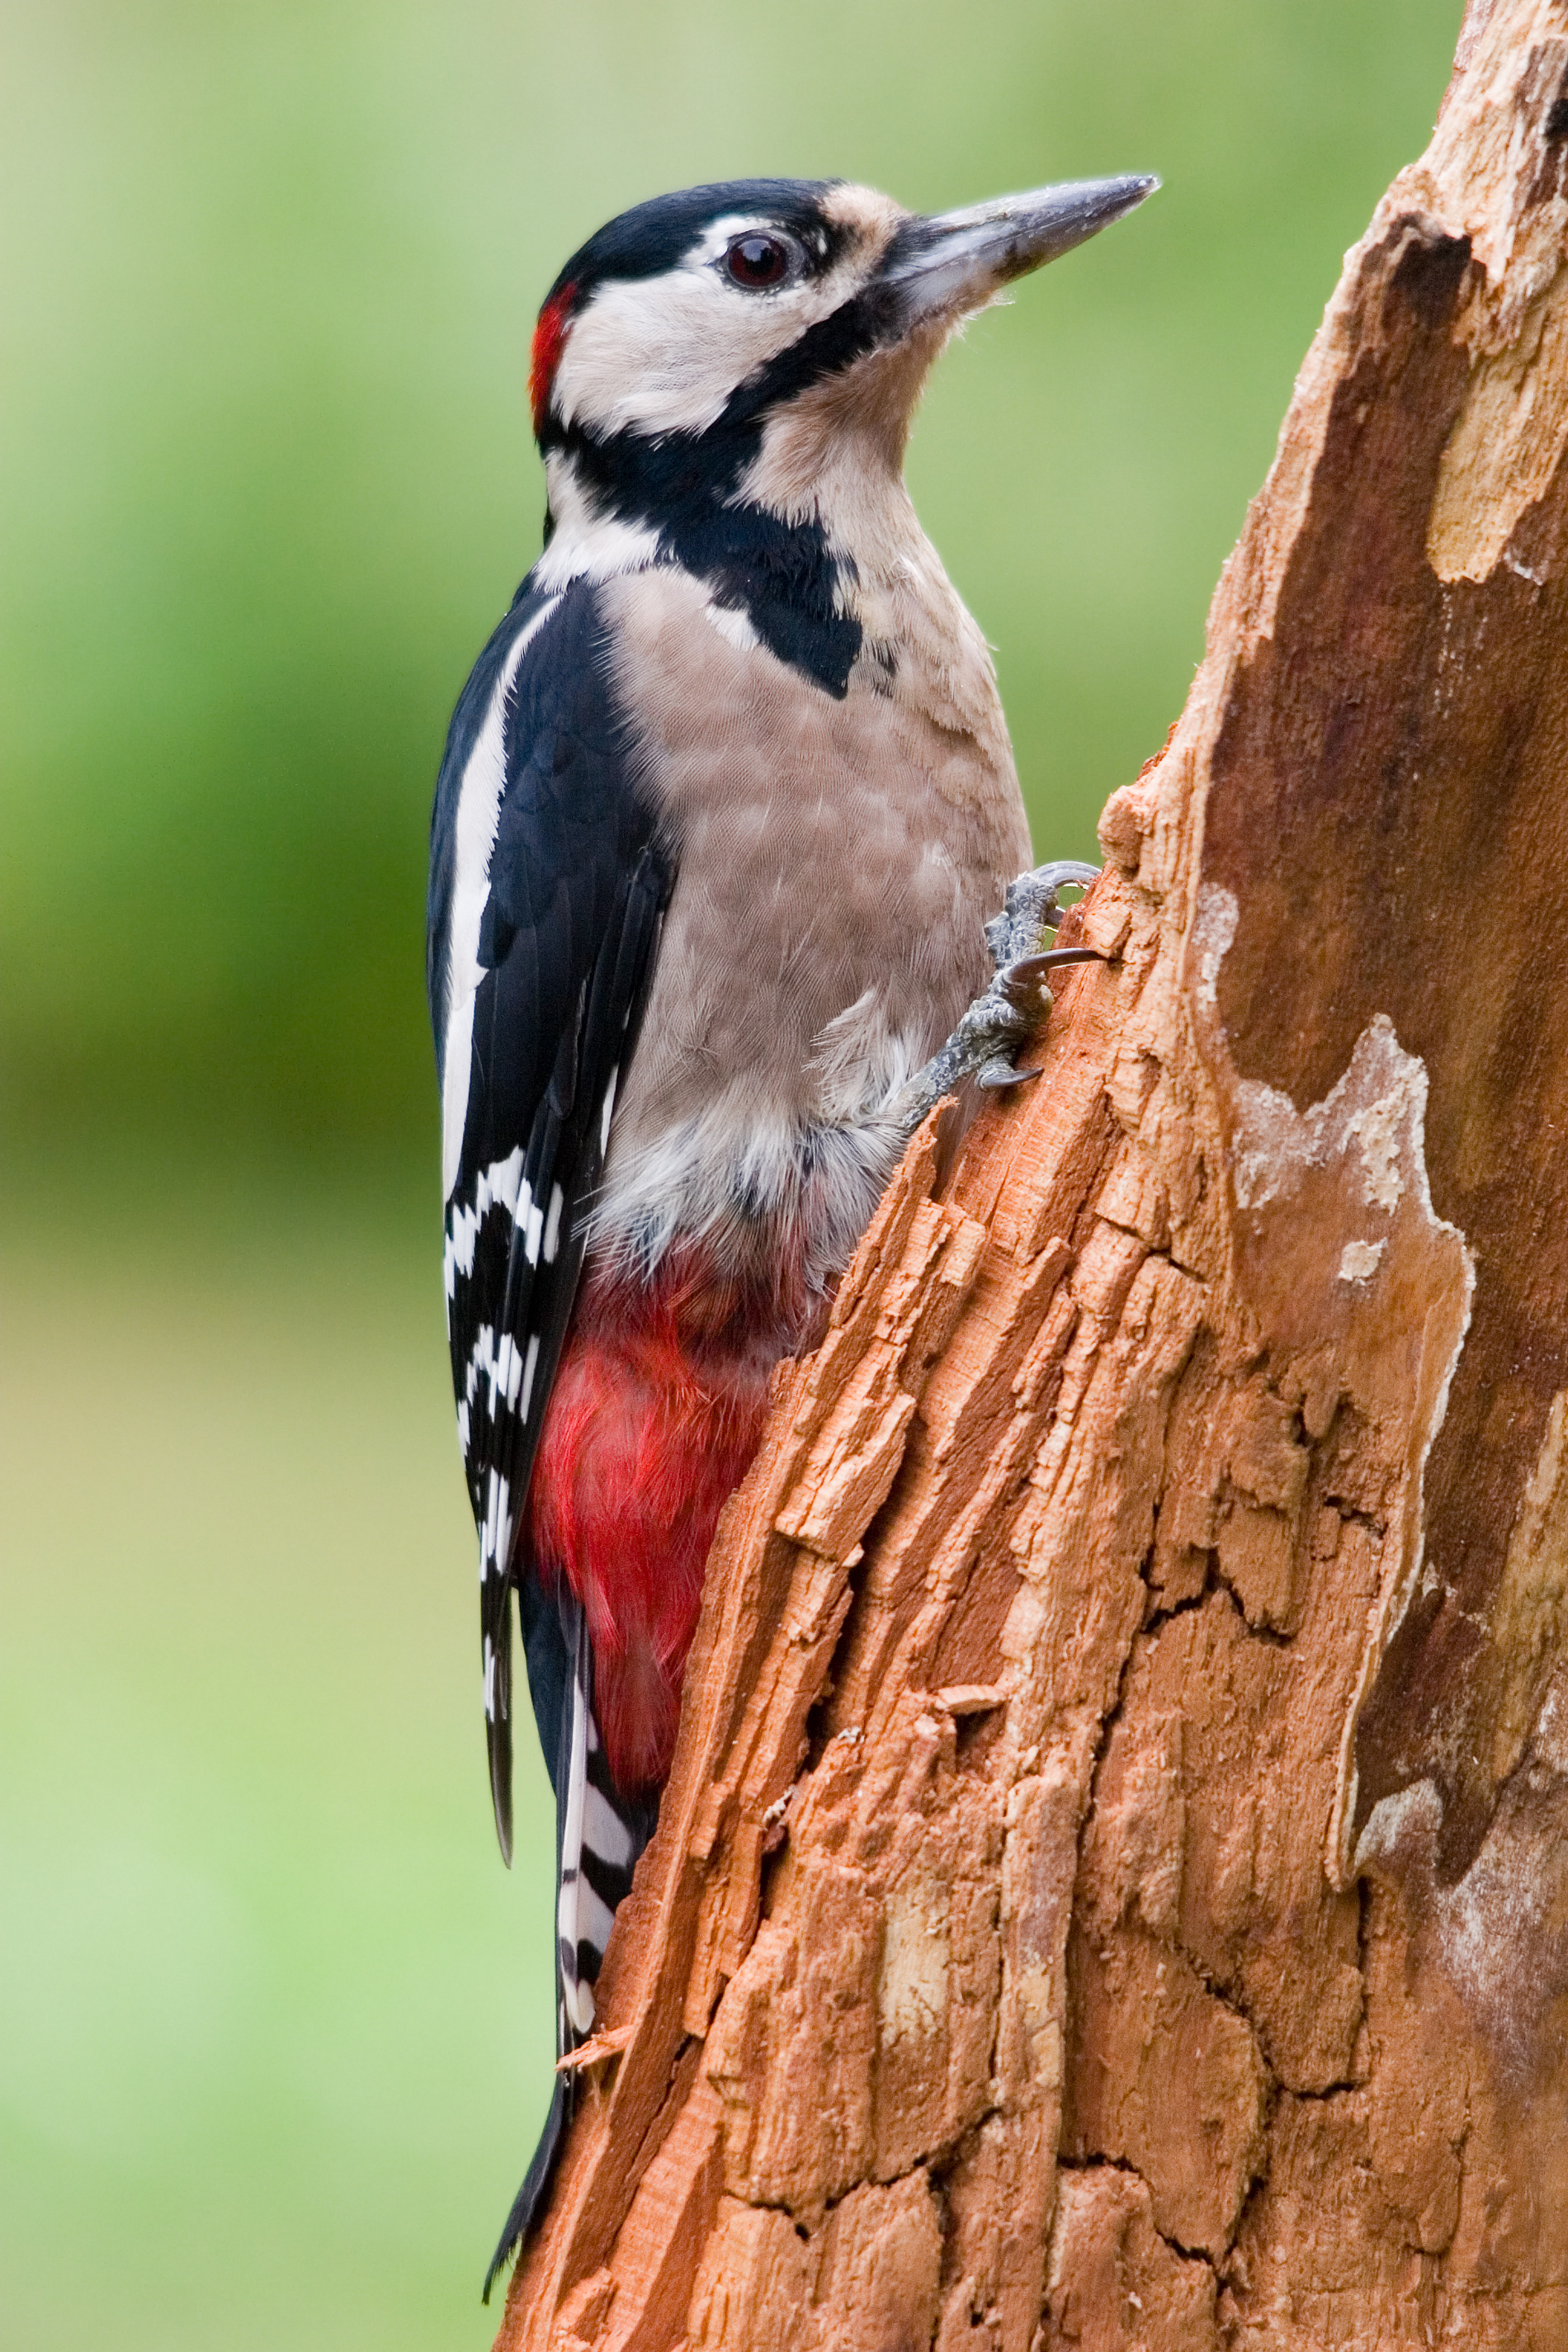 Woodpecker hole in a tree